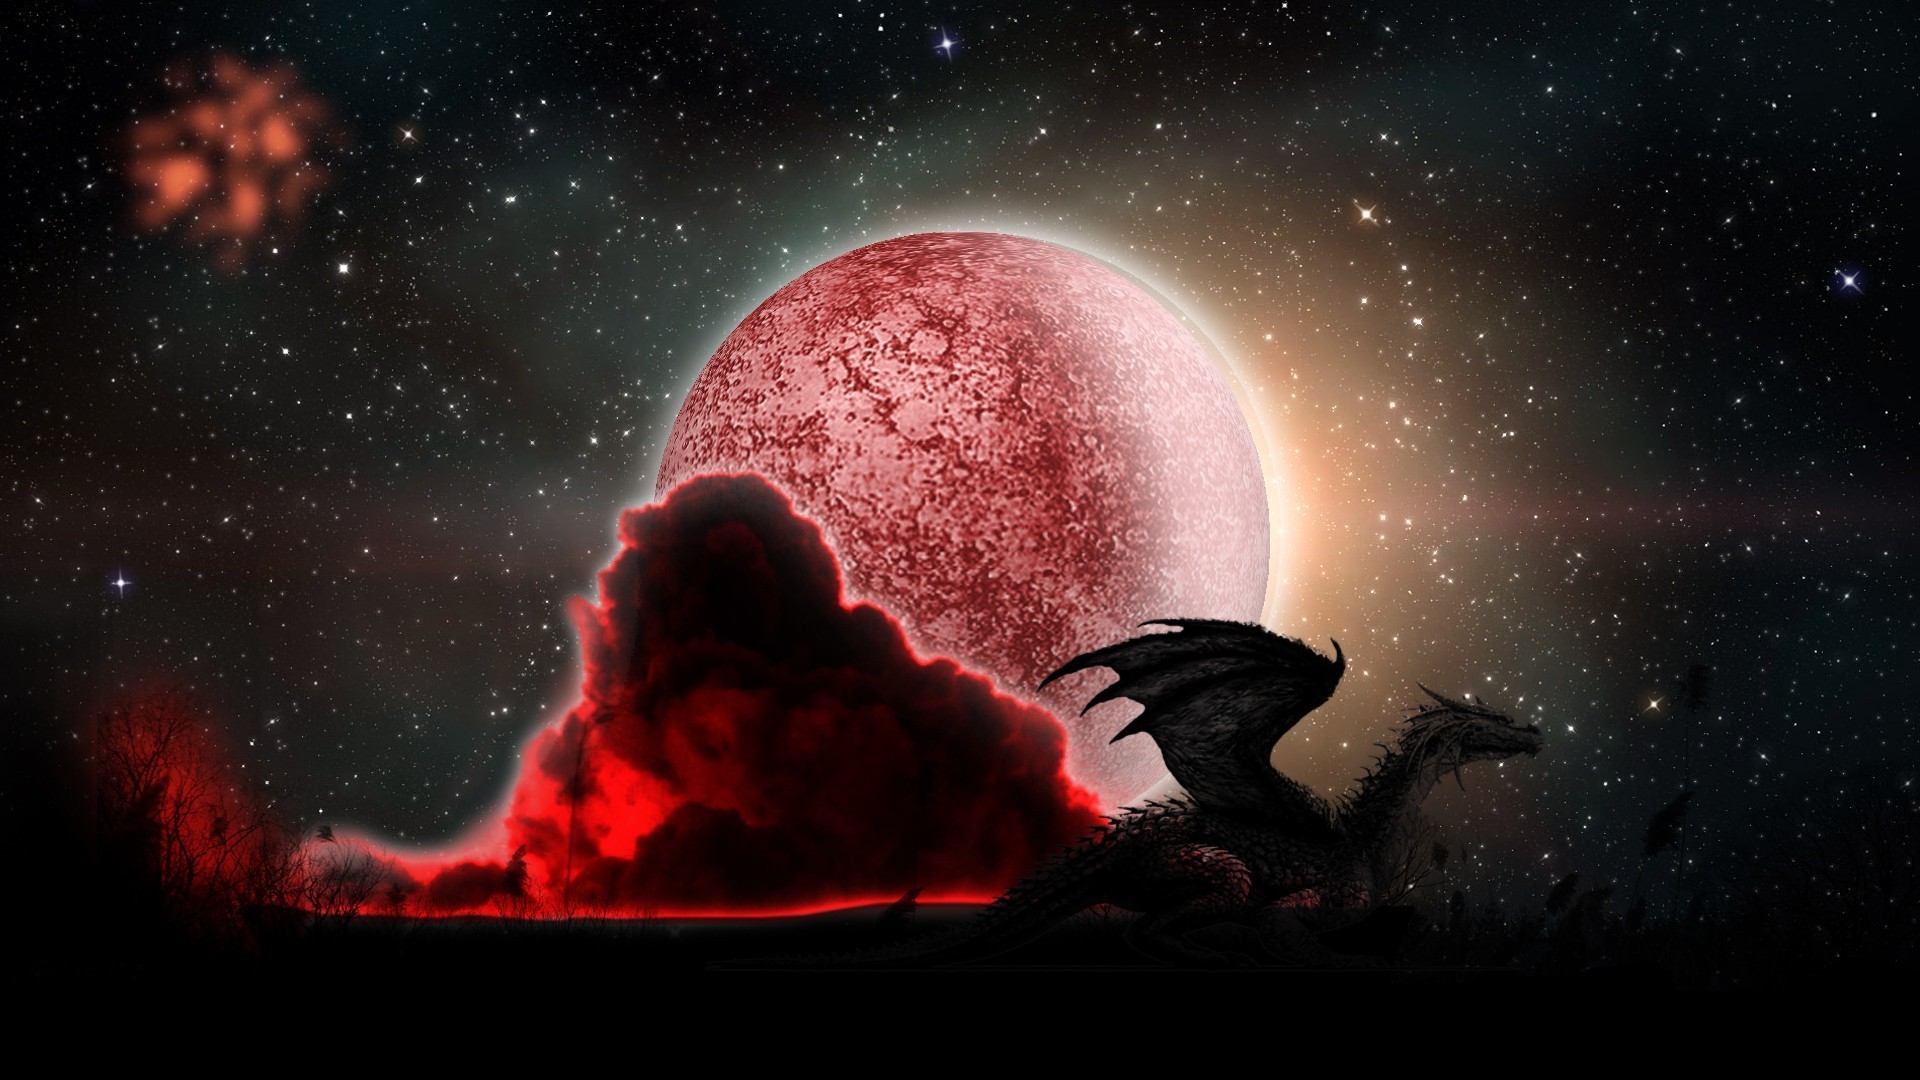 драконы луна астрономия галактика планеты космос астрология разведка пространство наука внеземное существо фантазия фантастика шарообразные туманность комета внешний созвездие атмосфера телескоп странно